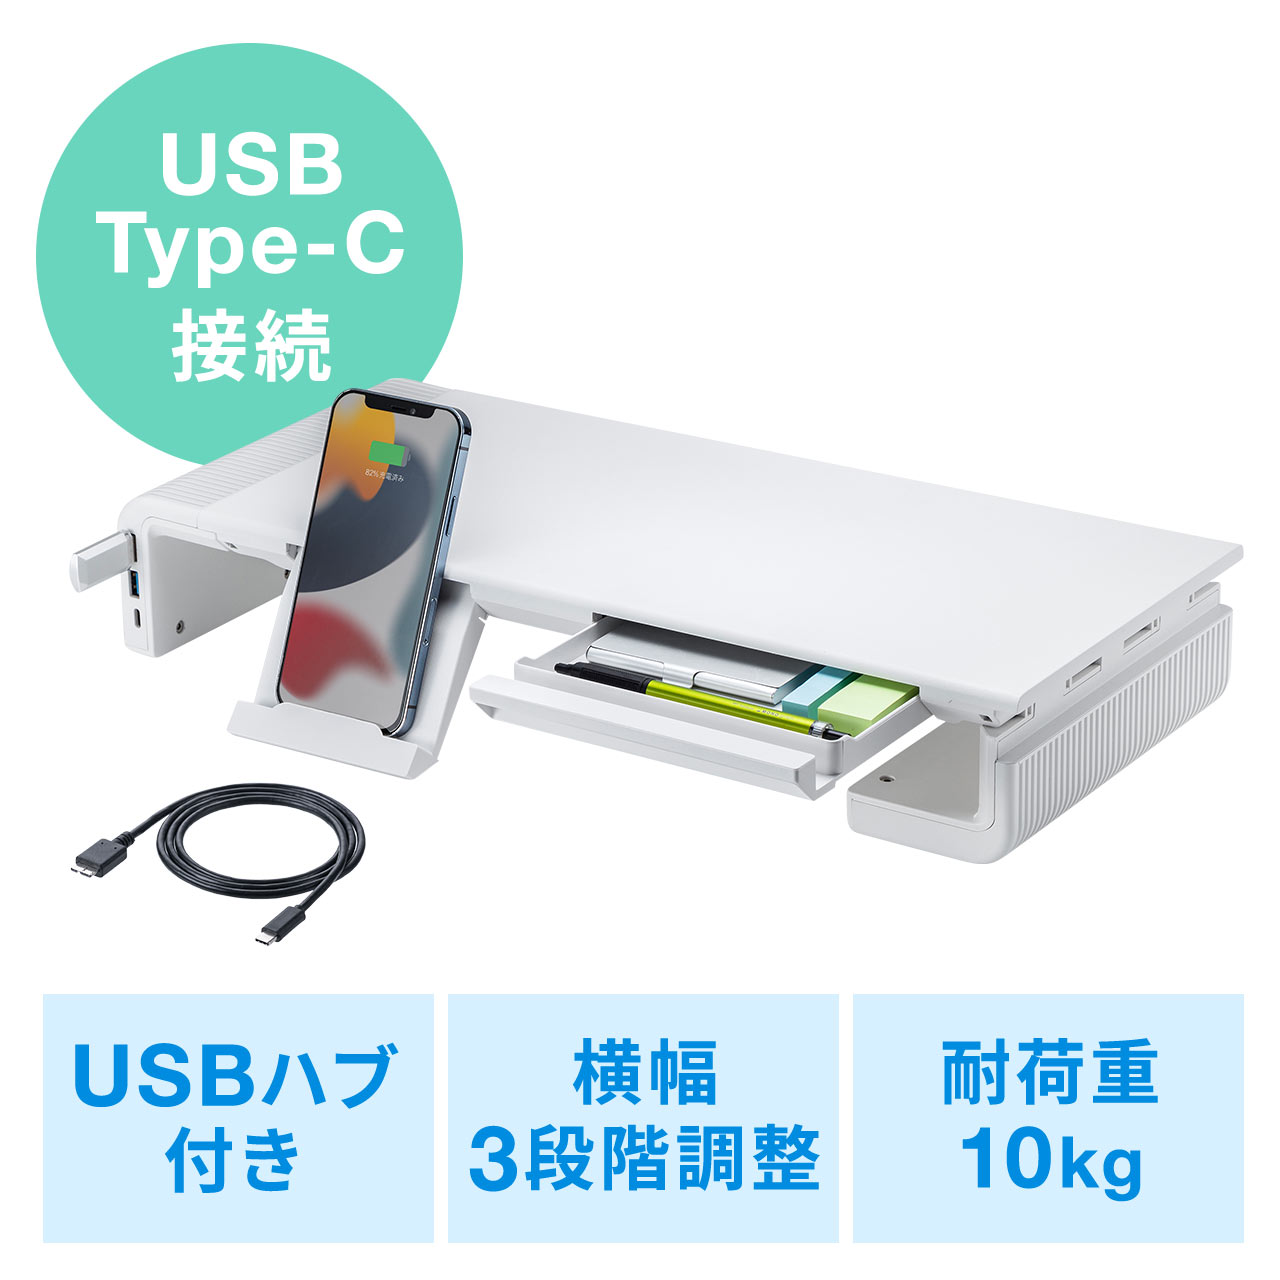 j^[  3iK 42cm/47cm/52cm o USBnu Type-C Type-A Type-Cڑ zCg 101-MRLC210CHW